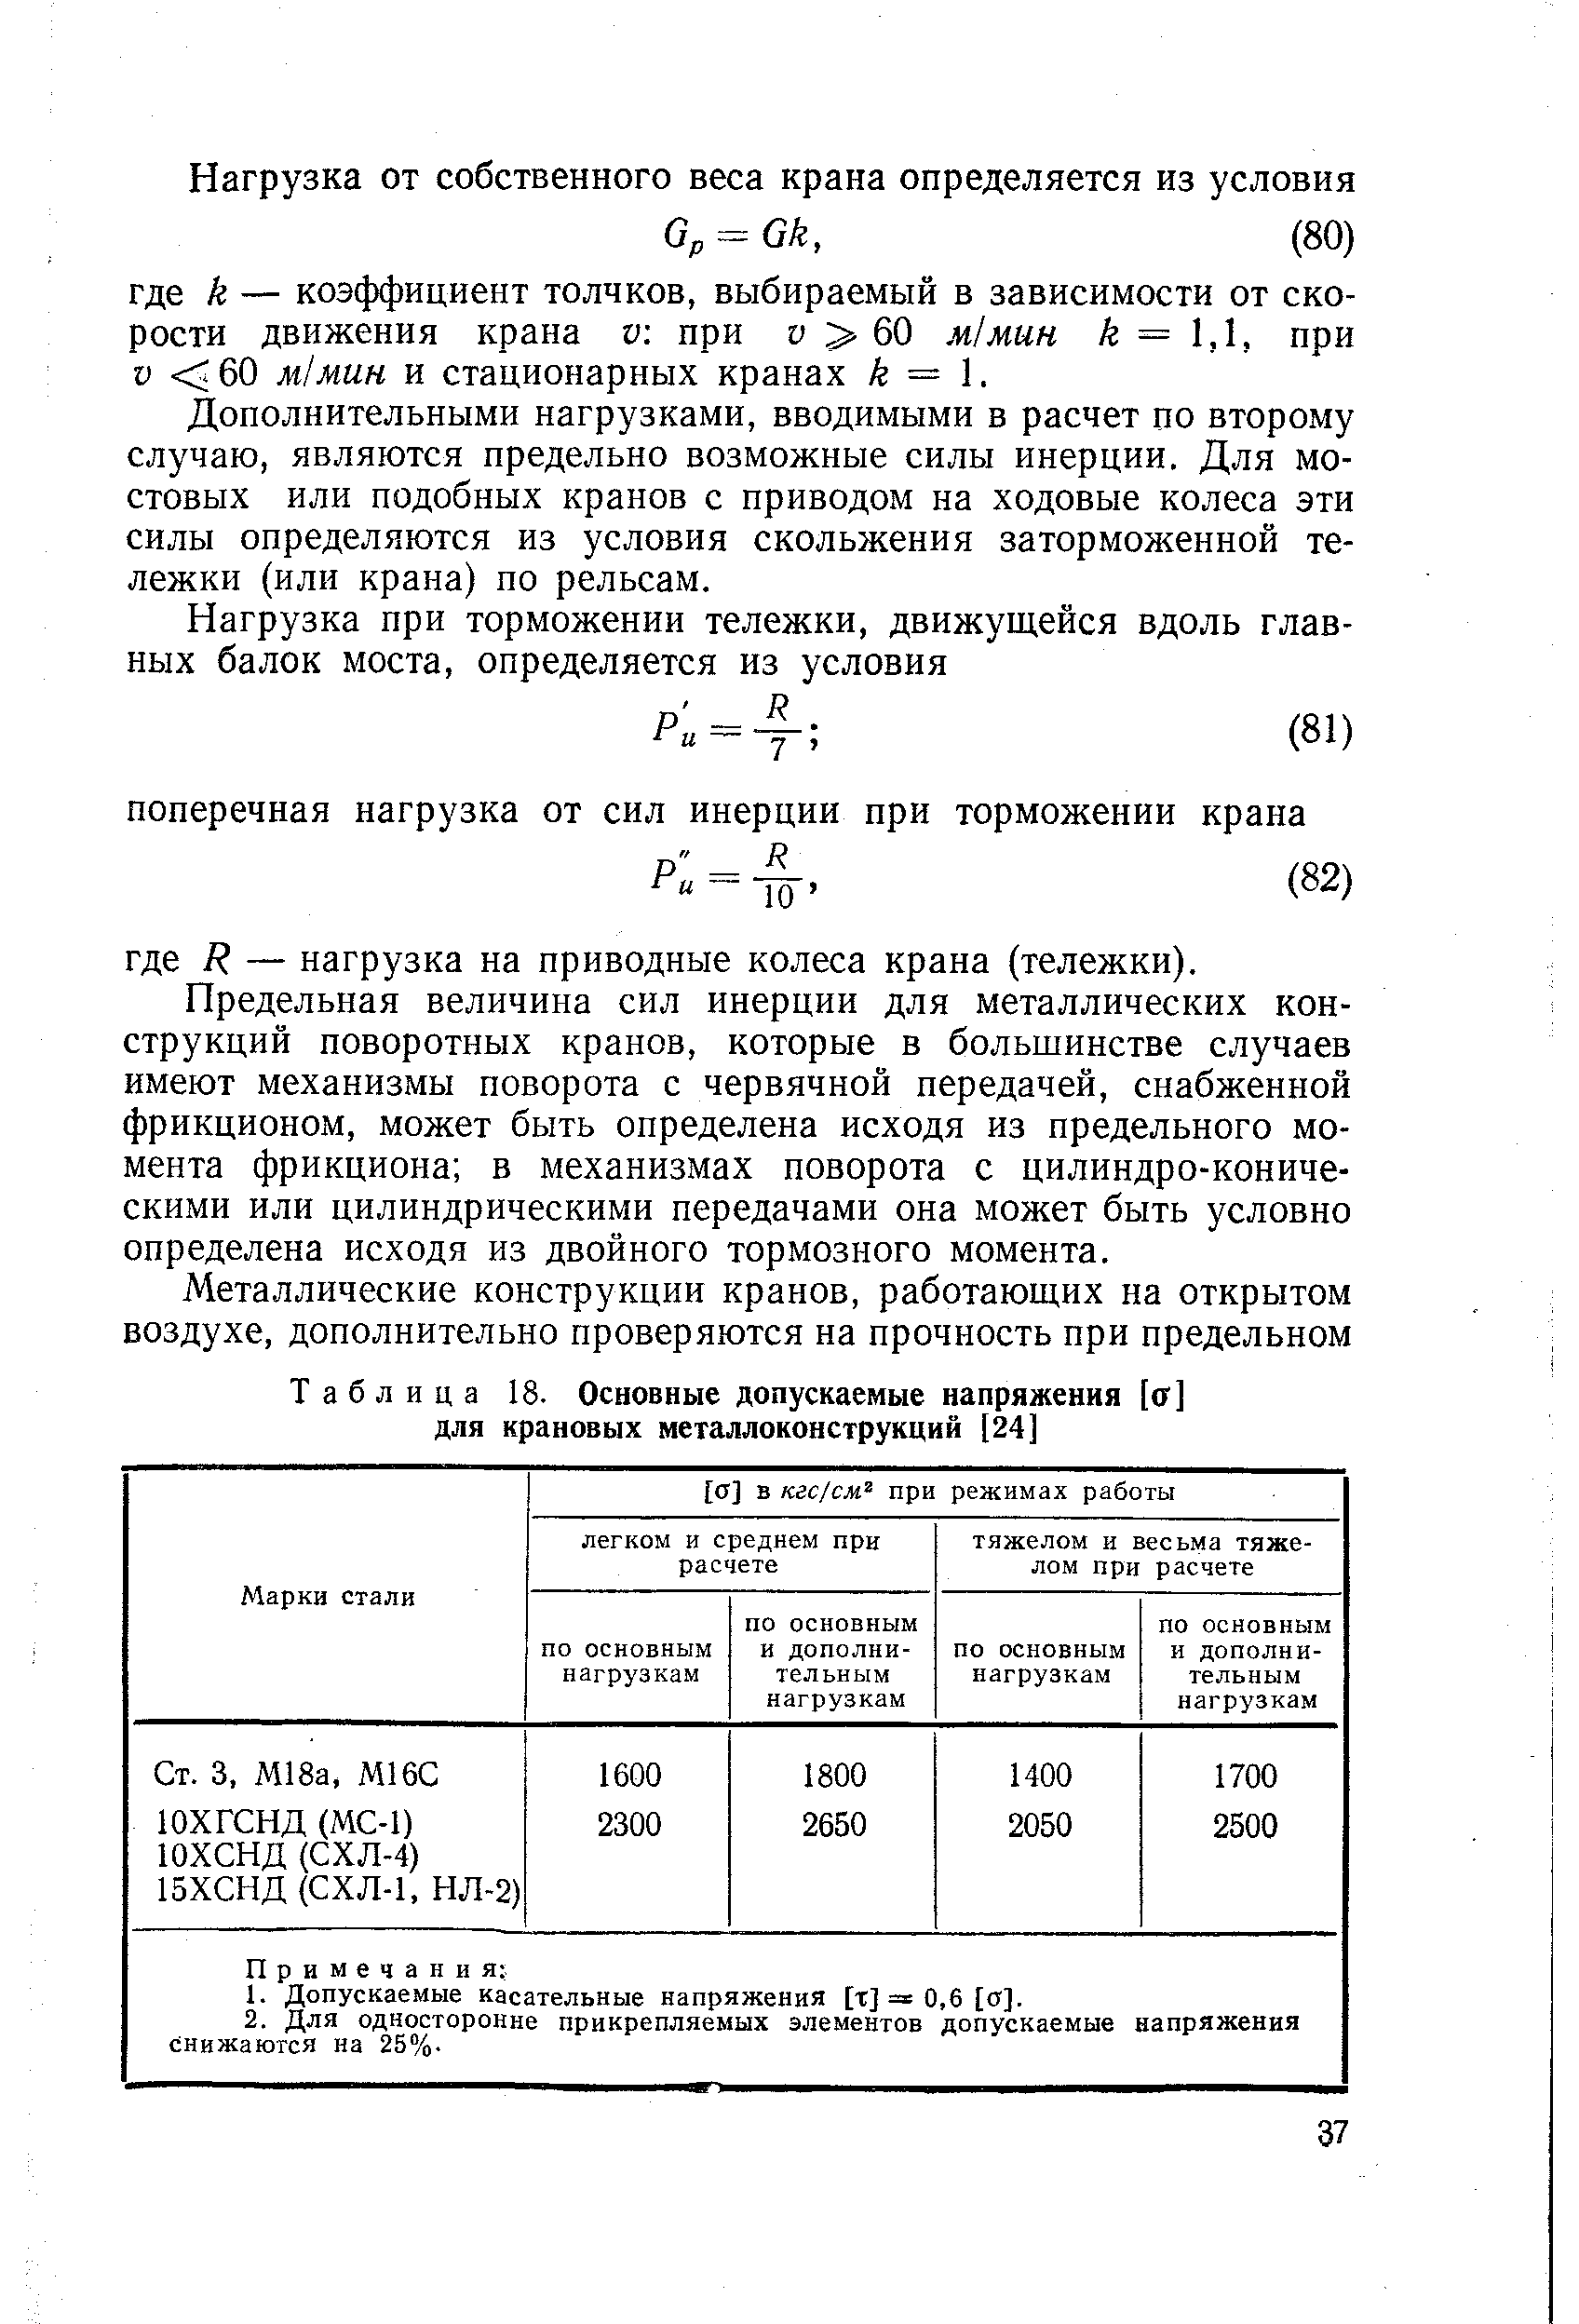 Таблица 18. Основные допускаемые напряжения [а] для крановых металлоконструкций [24]
